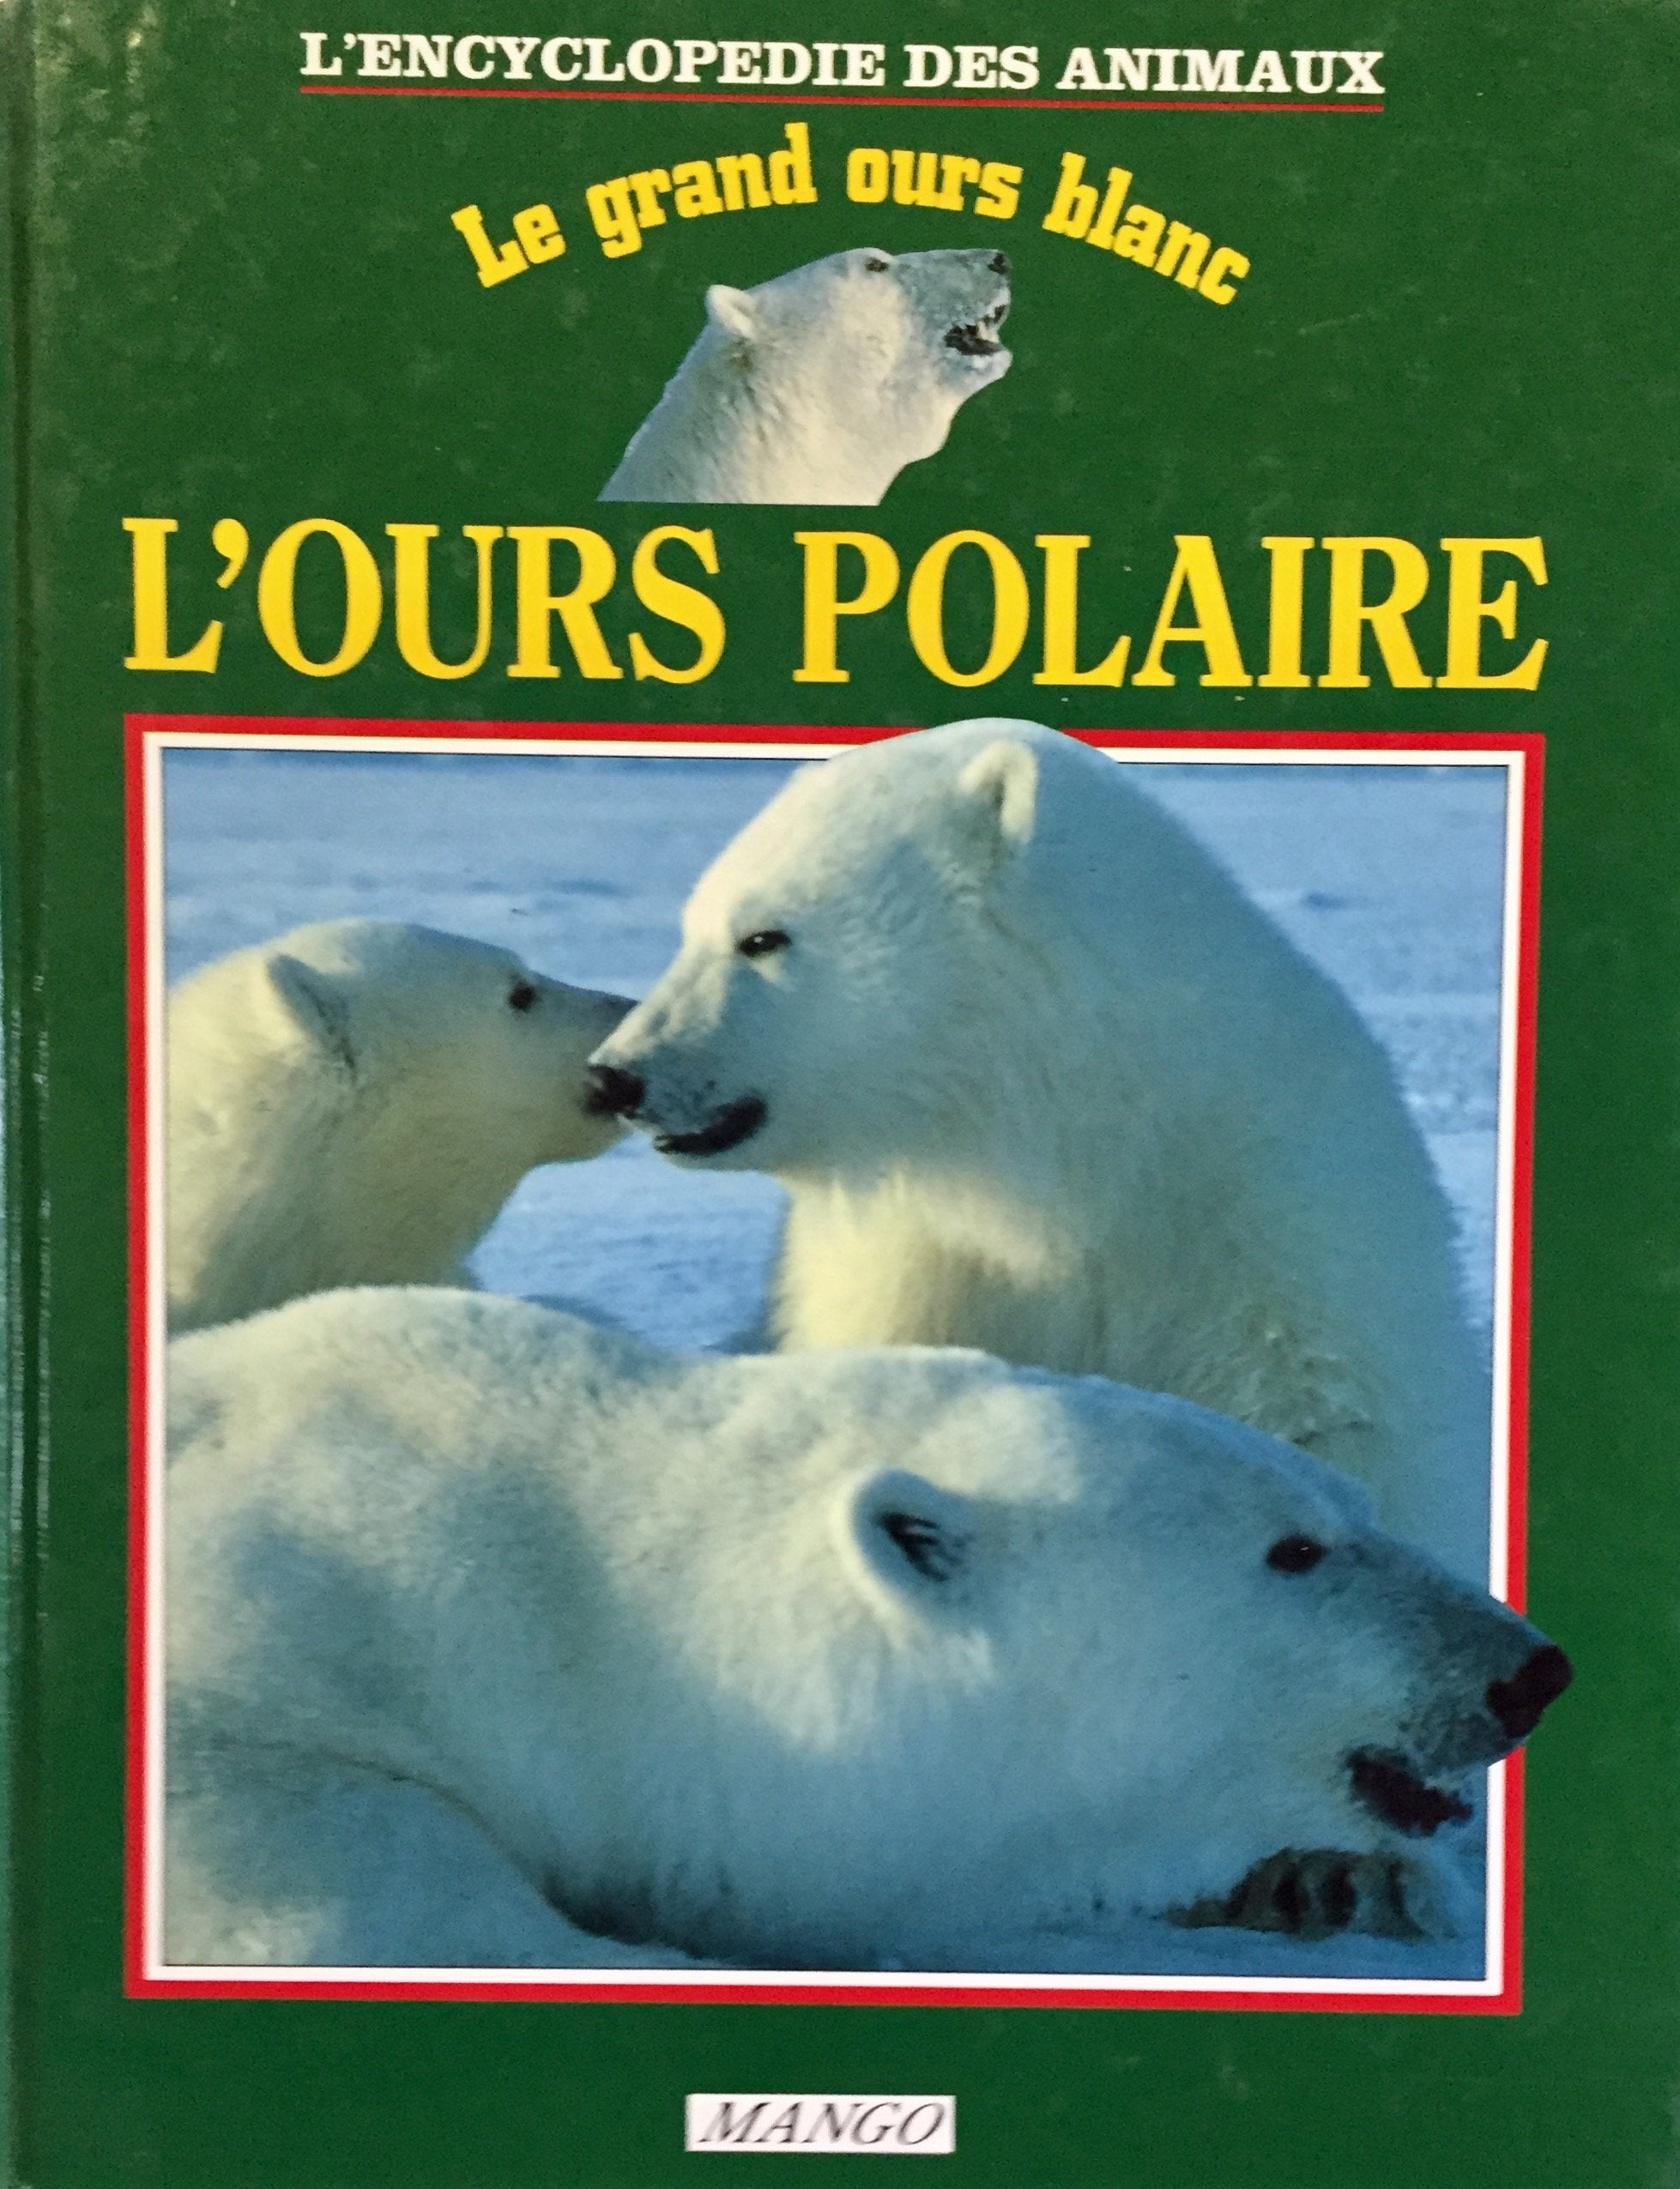 Livre ISBN 2740400322 L'encyclopédie des animaux : Le grand ours blanc : L'ours polaire (Caroline Brett)